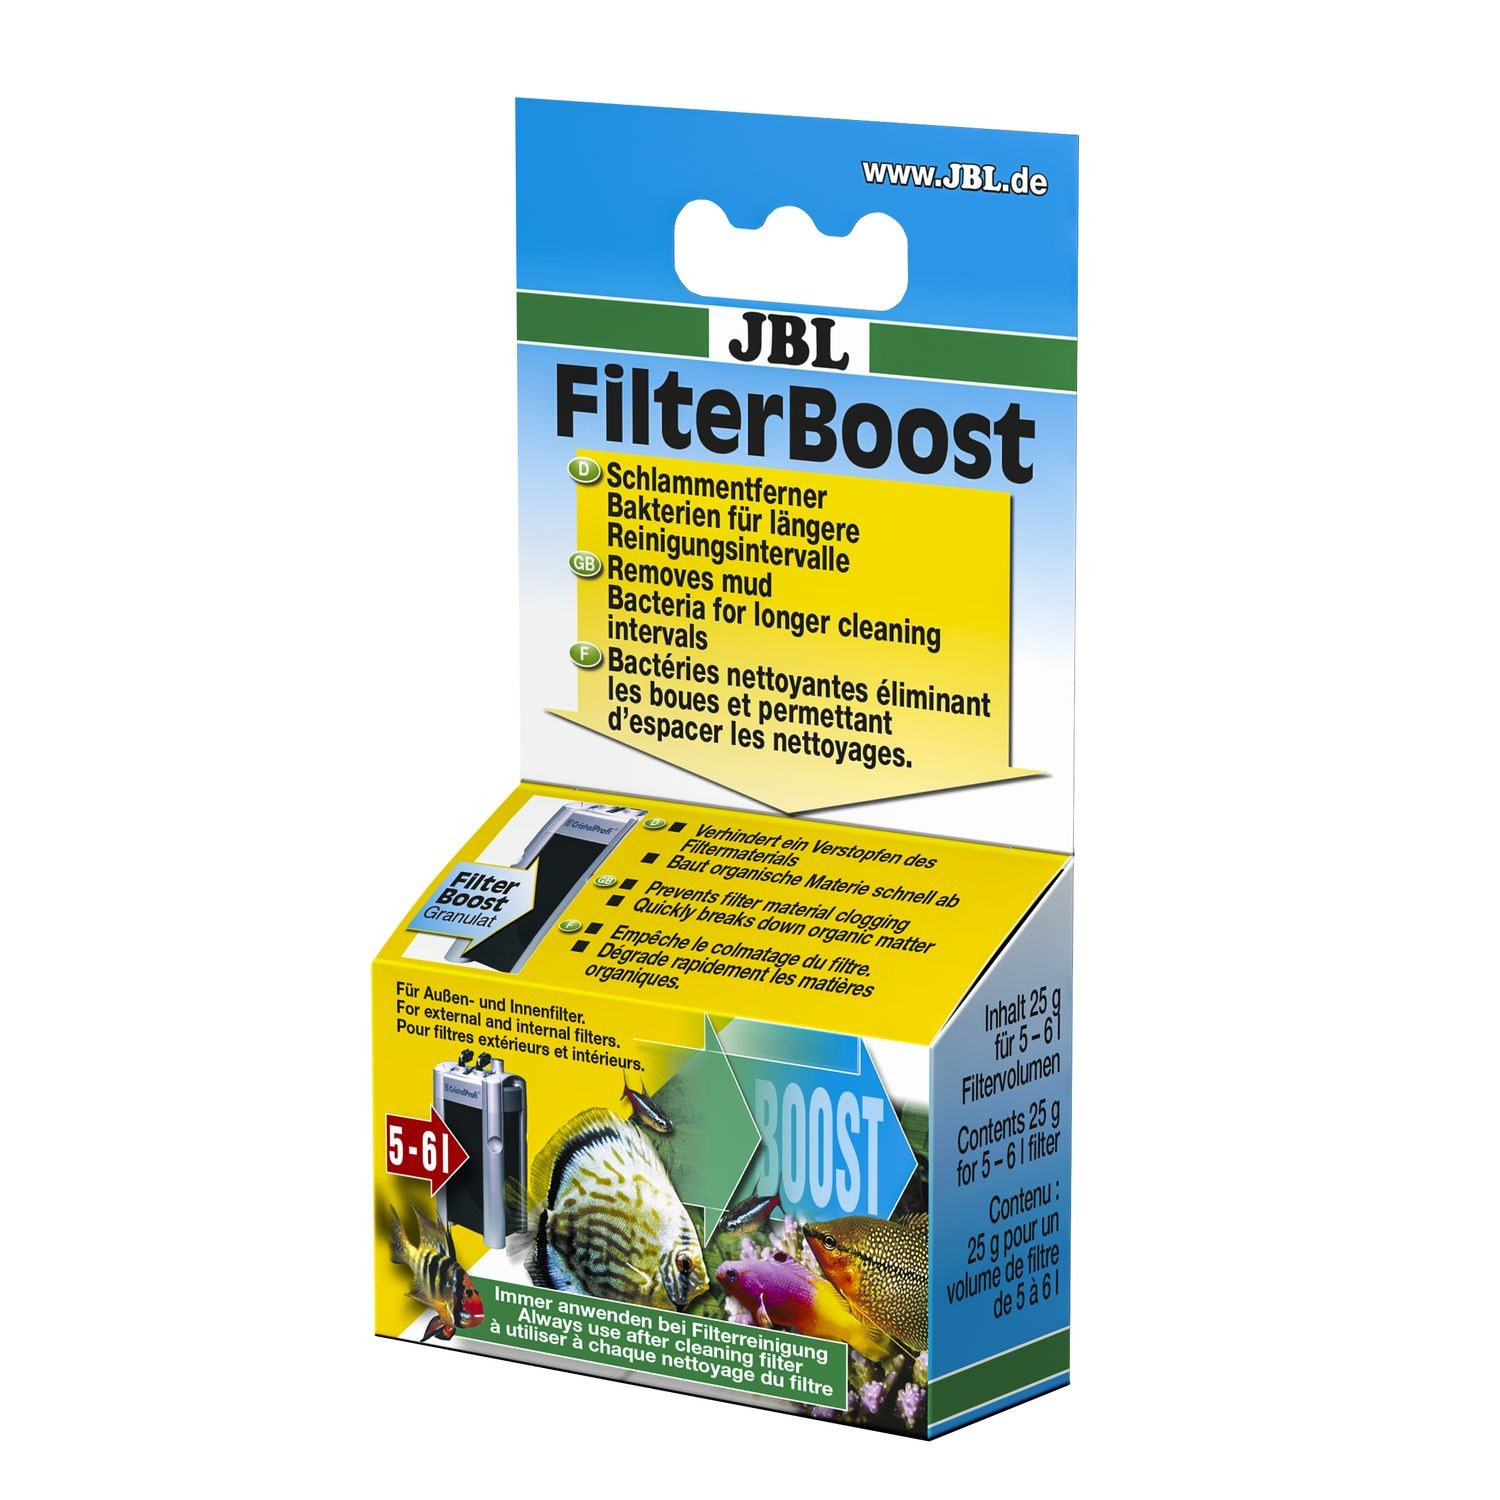 FilterBoost ottimizza le prestazioni del tuo filtro